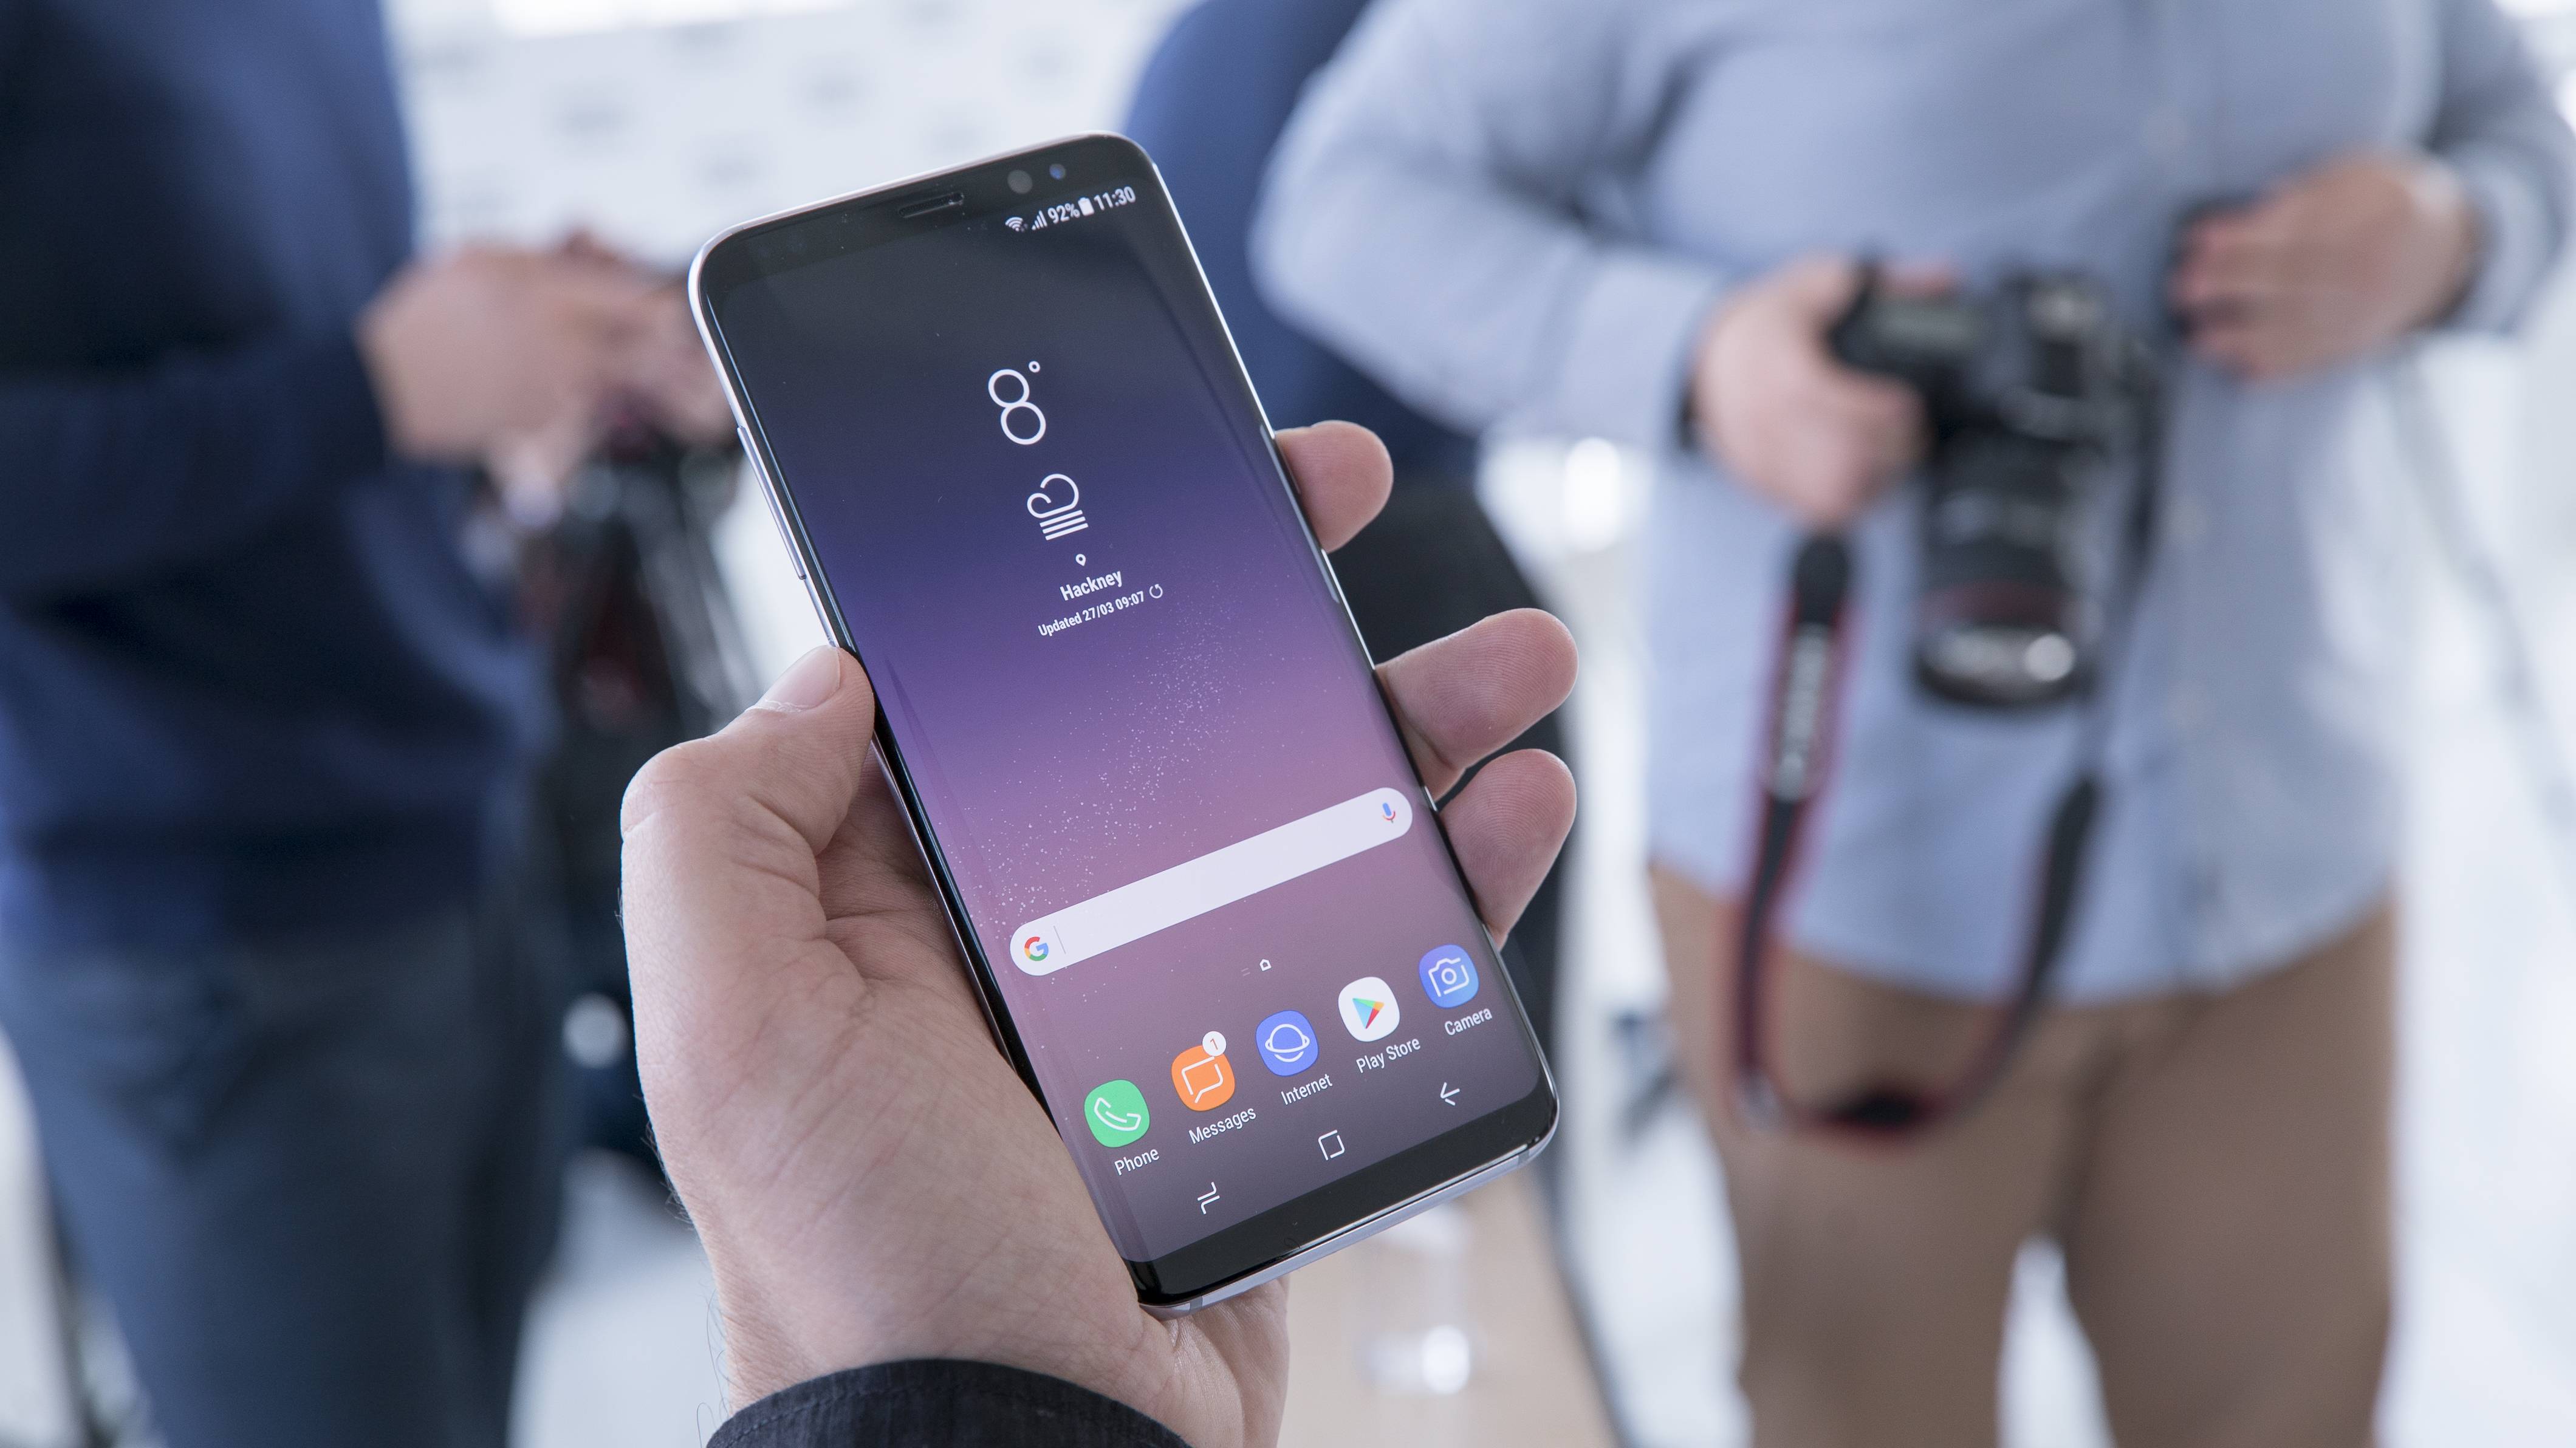 Samsung galaxy s8 - 8 секретов и советов по использованию